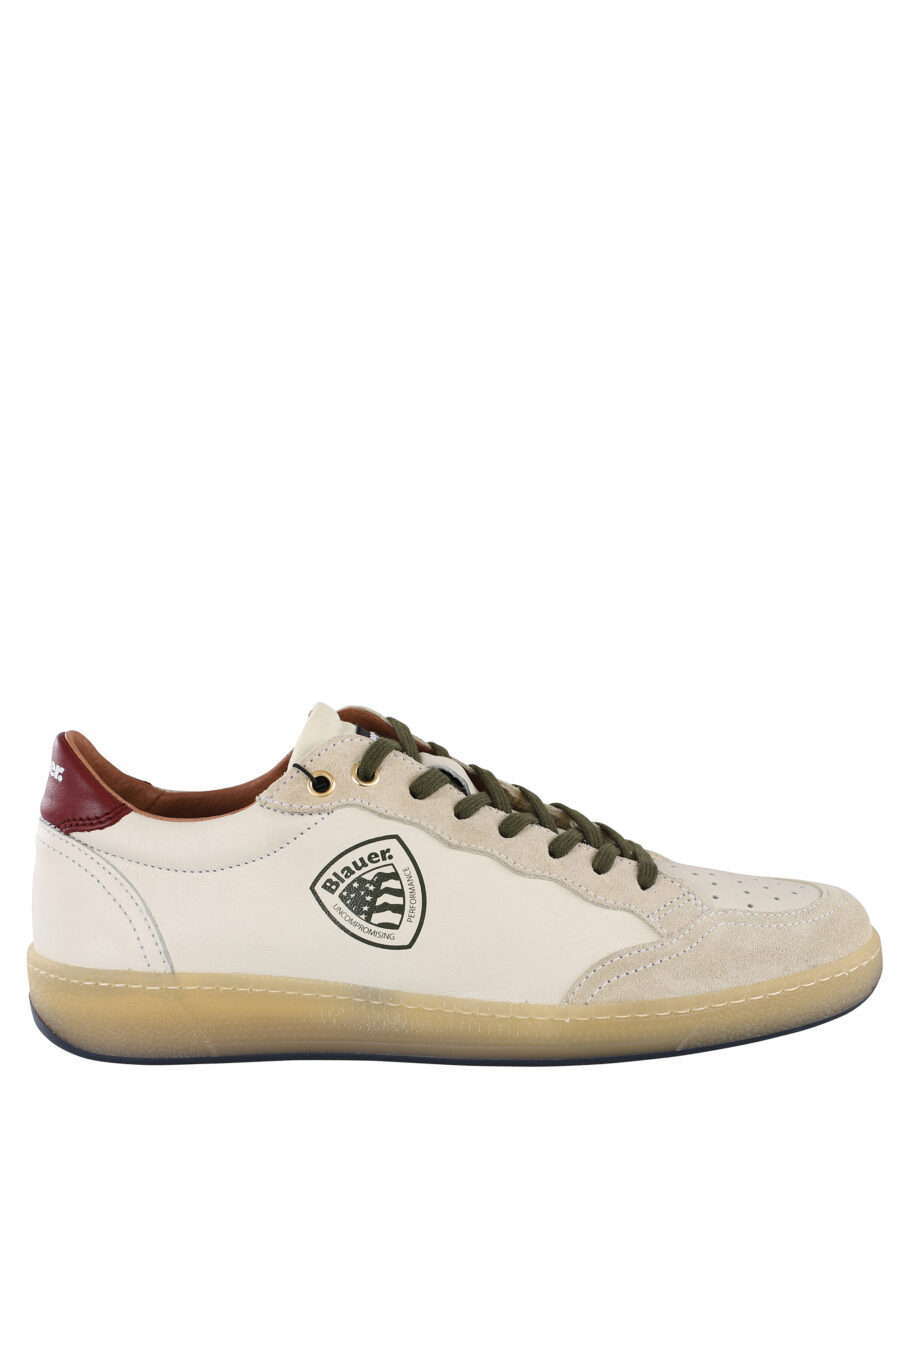 Zapatillas "murray" blancas con cordones verdes y logo - IMG 6836